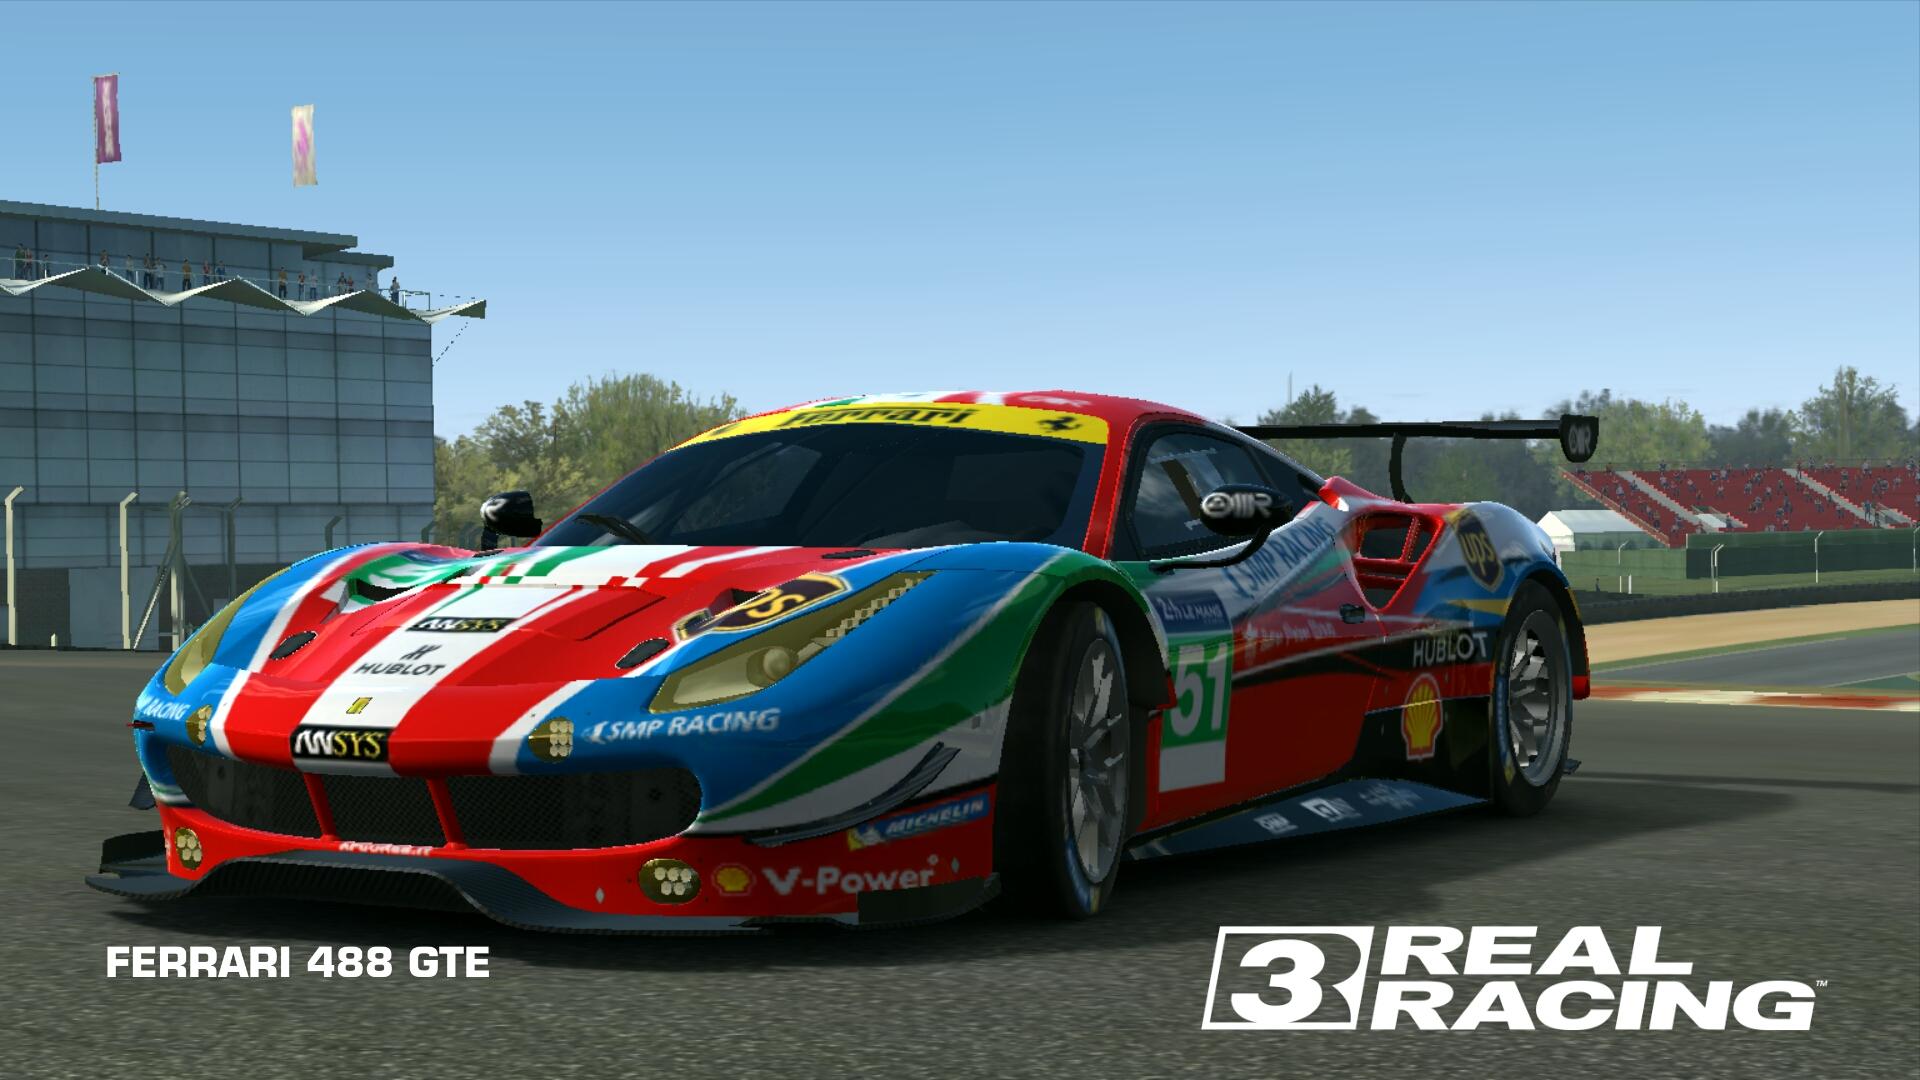 FERRARI 488 GTE. Real Racing 3